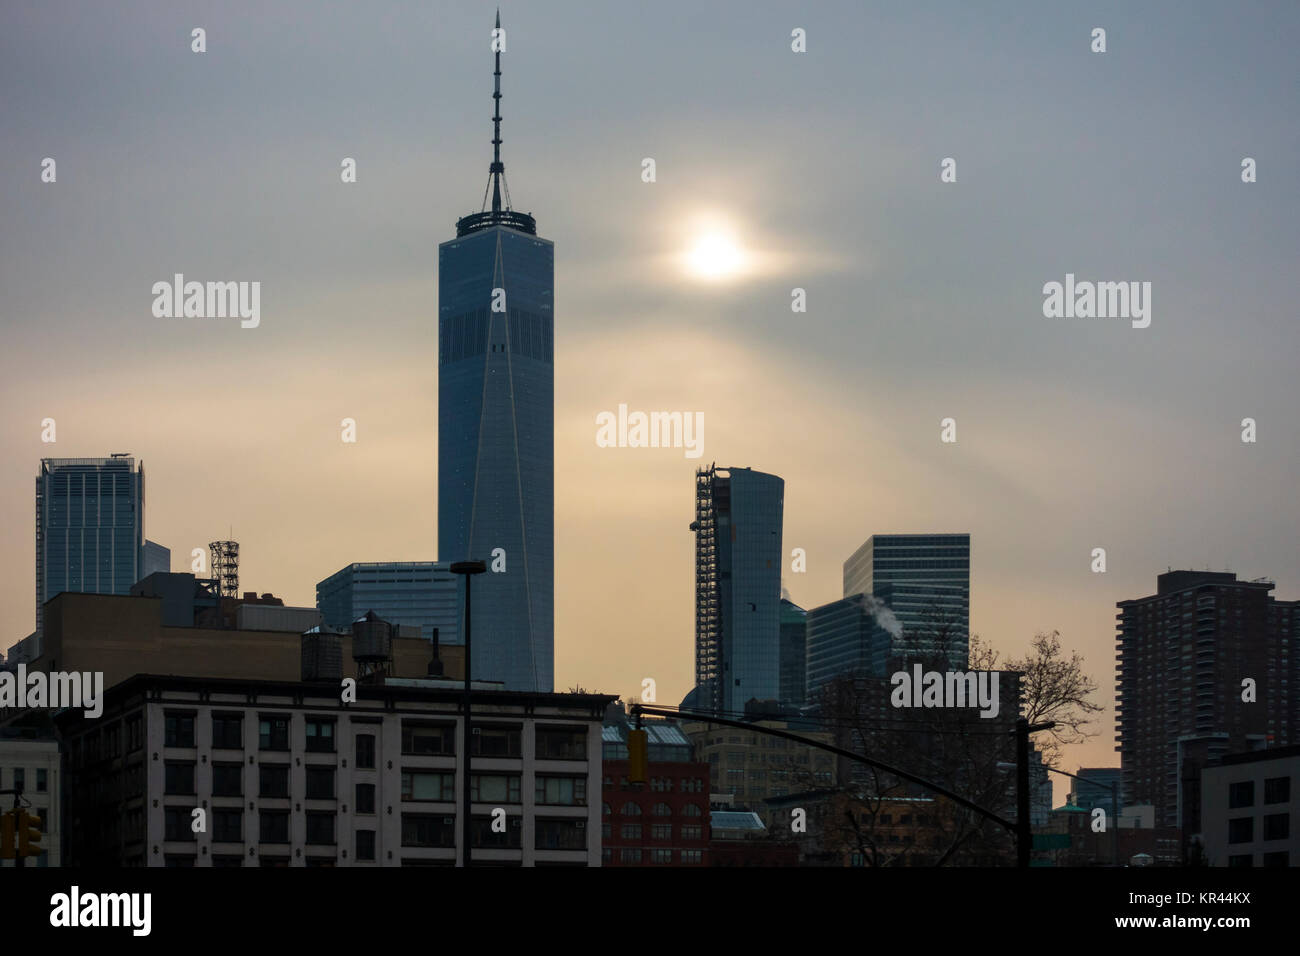 World Trade Center Tower, Freedom Tower, insieme contro una regolazione del sole Foto Stock